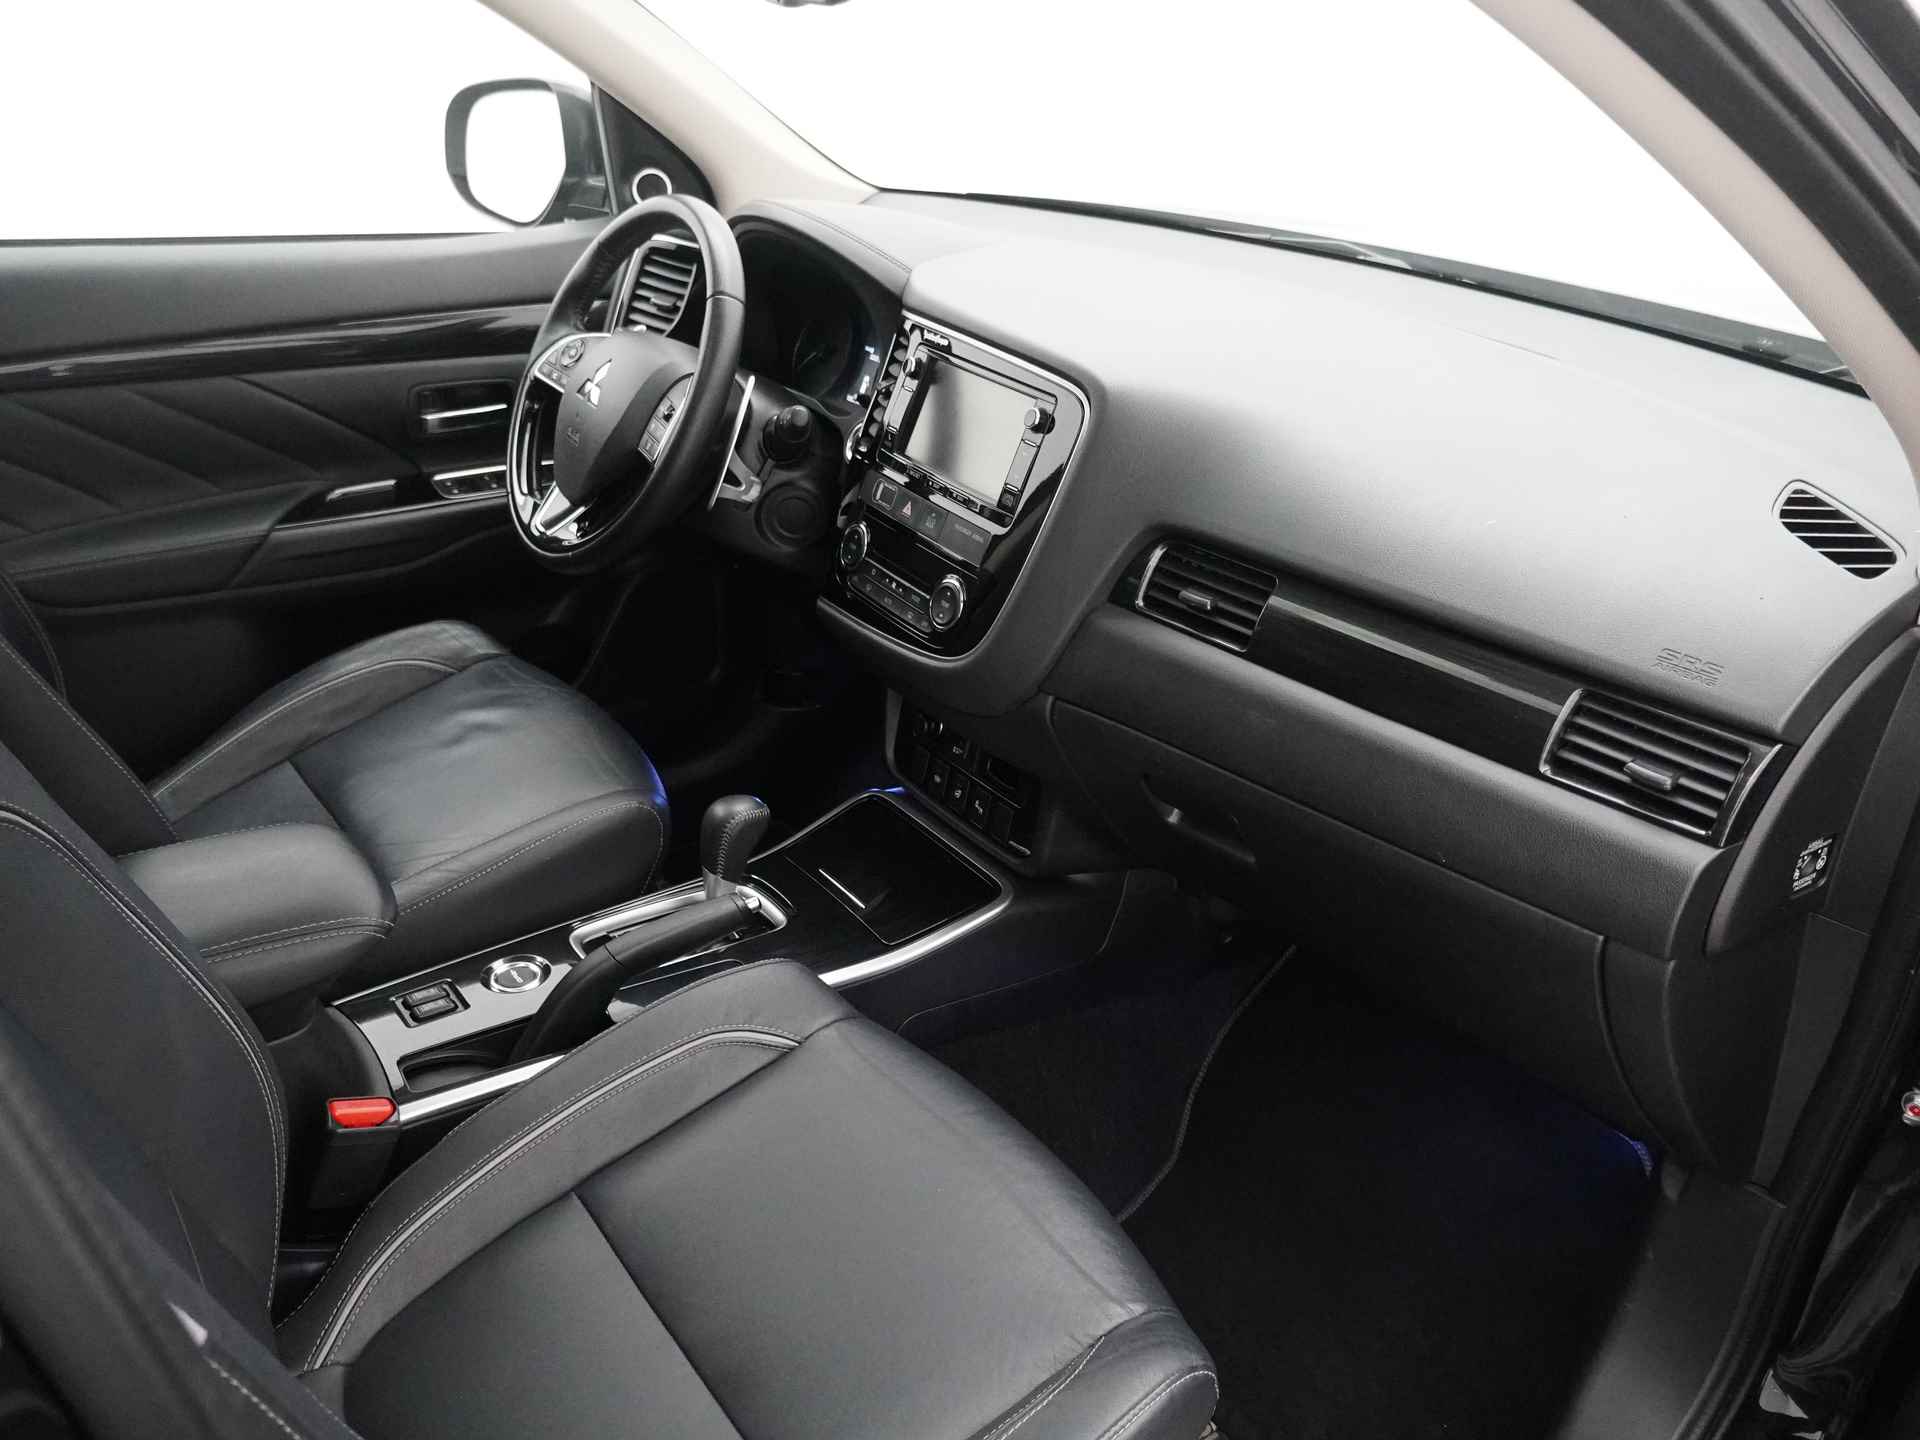 Mitsubishi Outlander 2.0 Instyle+ 4WD - Schuifkanteldak - Lederen bekleding - Voorraam verwarming - Apple CarPlay / Android Auto - Elektrische achterklep - 12 Maanden bovag garantie - 41/48